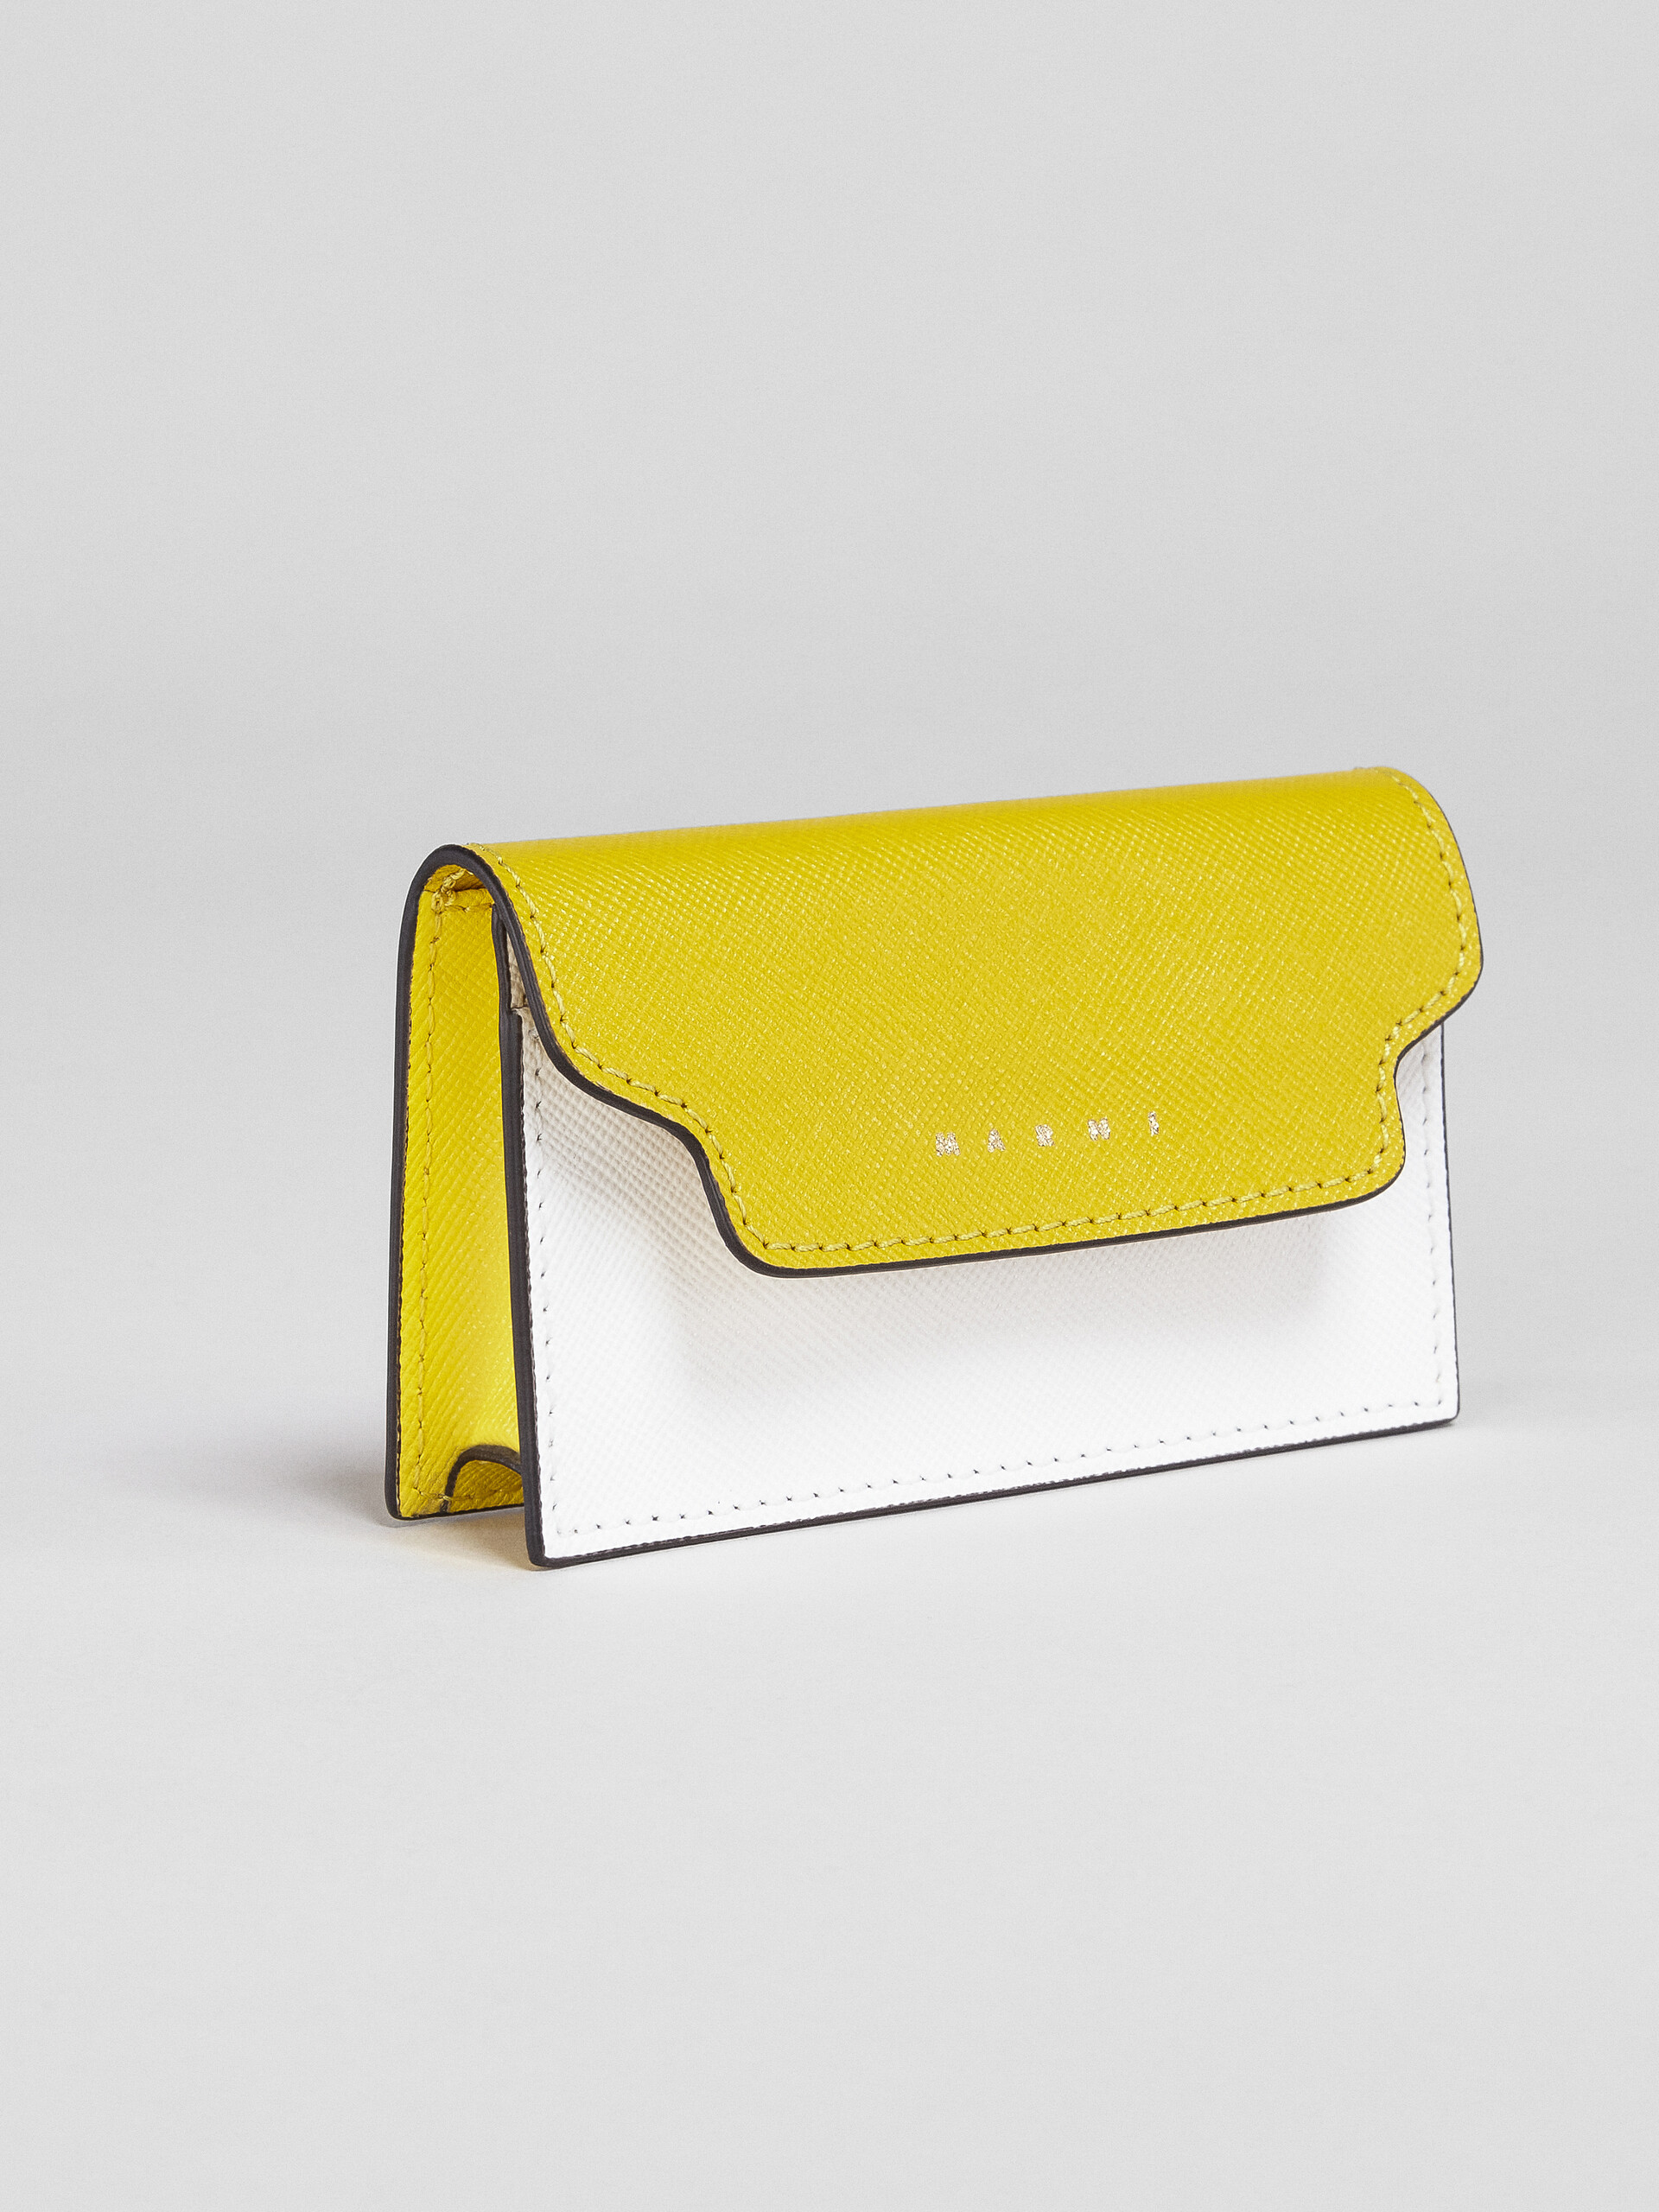 Porte-cartes de visite en saffiano jaune et blanc ton sur ton - Portefeuilles - Image 4